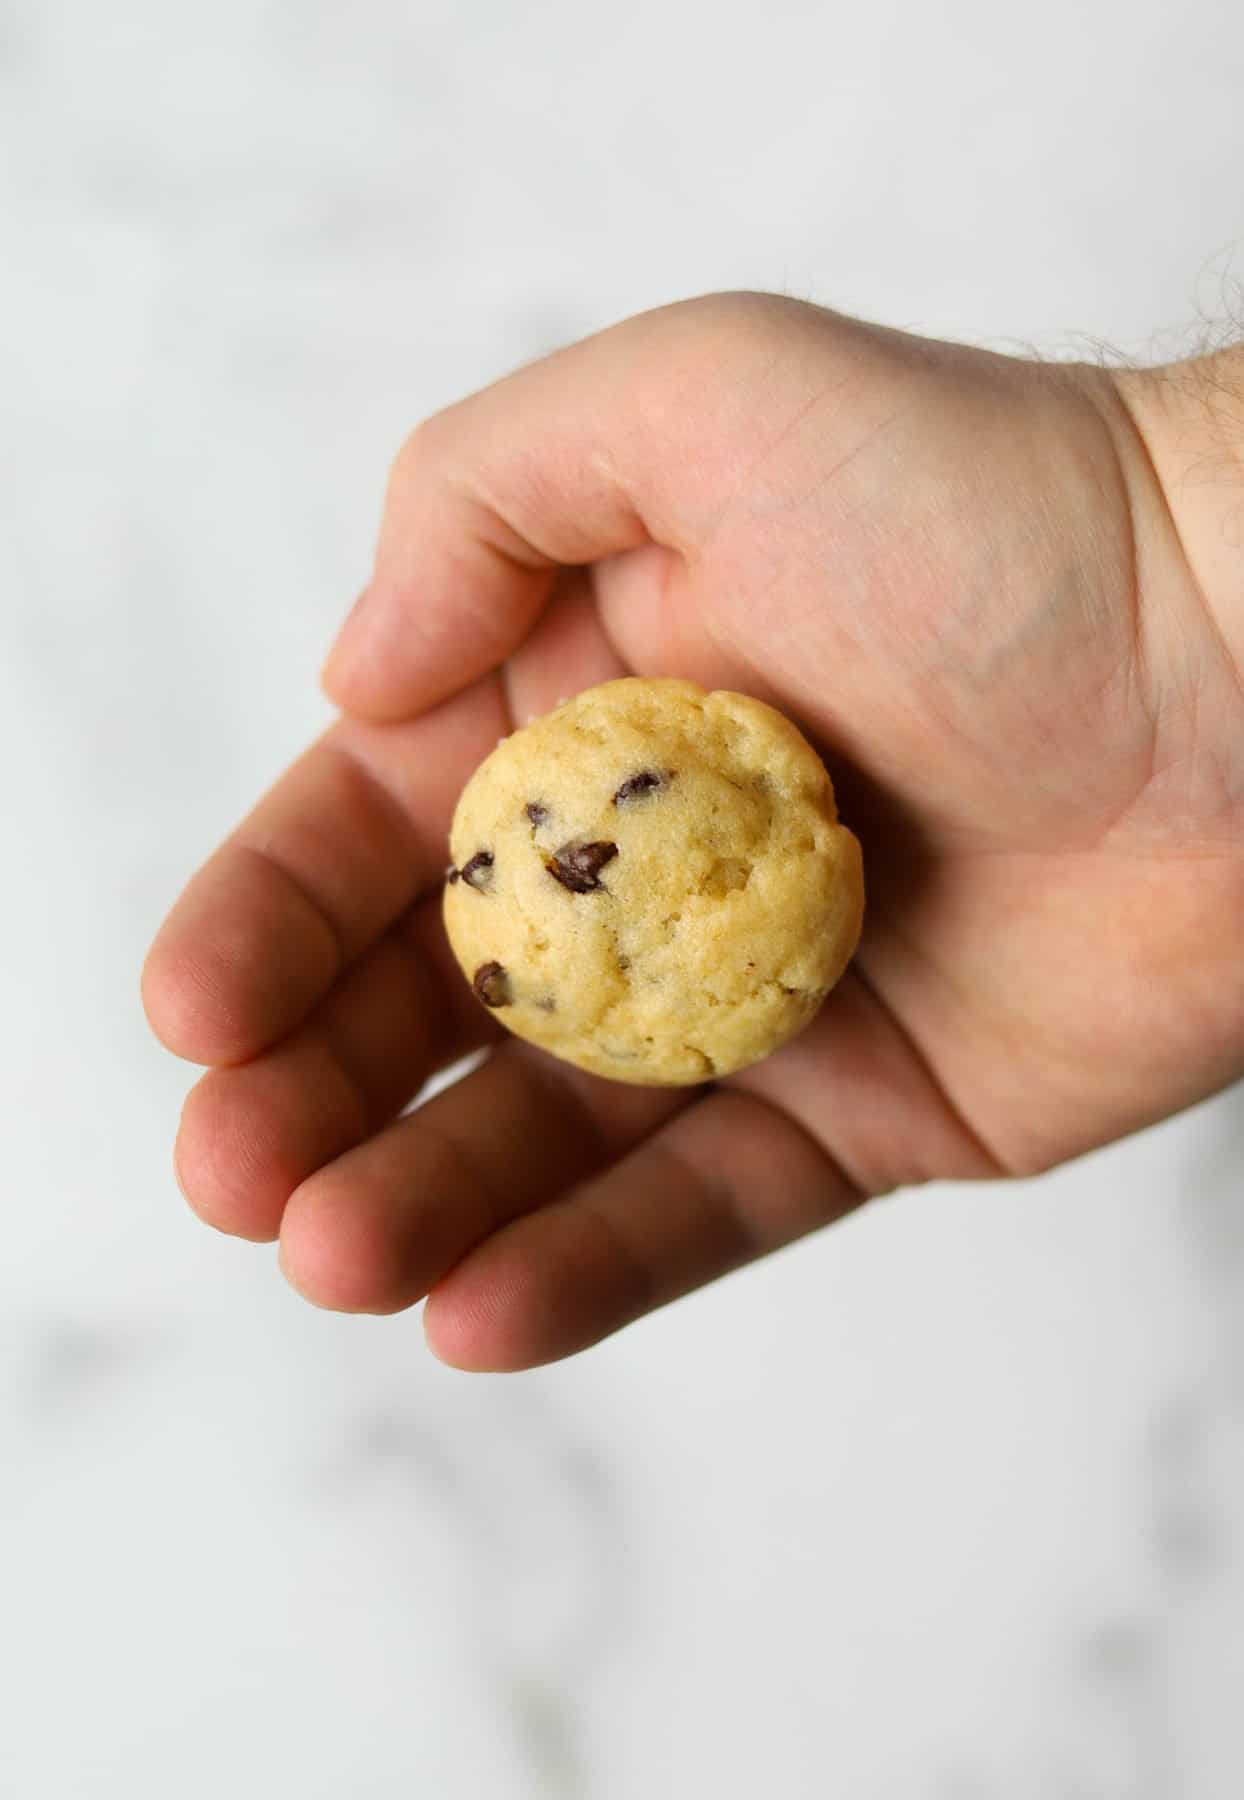 Mini muffin in a hand